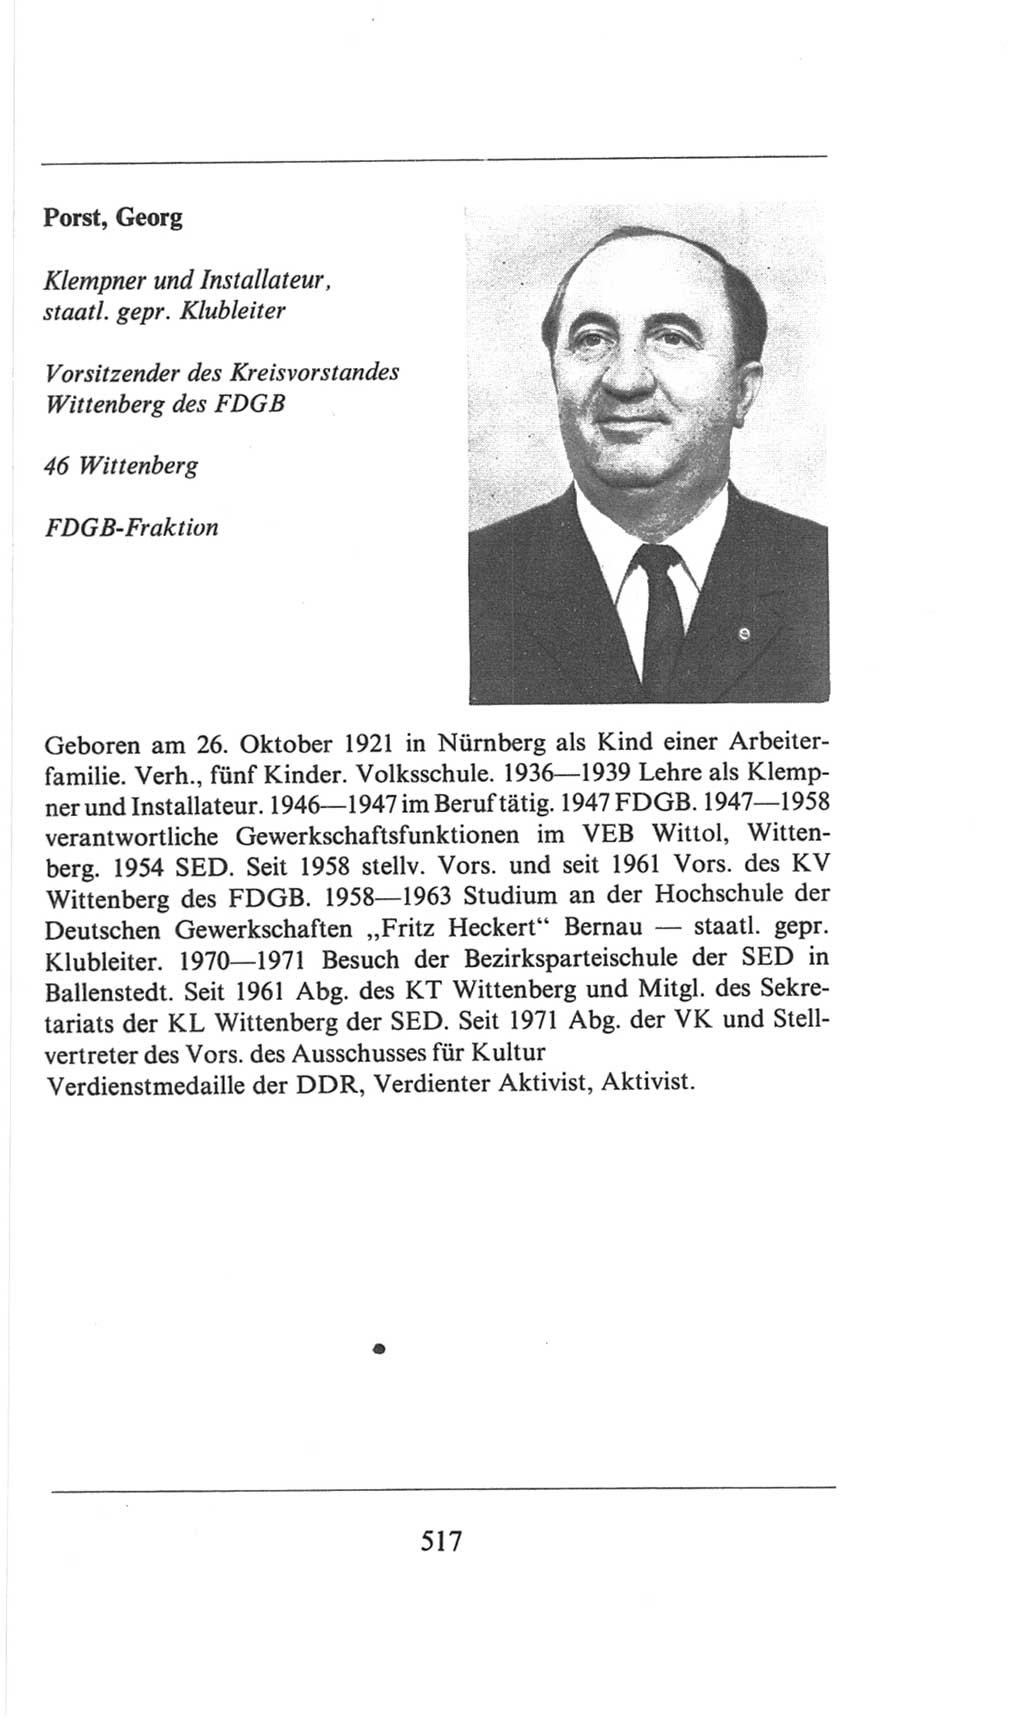 Volkskammer (VK) der Deutschen Demokratischen Republik (DDR), 6. Wahlperiode 1971-1976, Seite 517 (VK. DDR 6. WP. 1971-1976, S. 517)